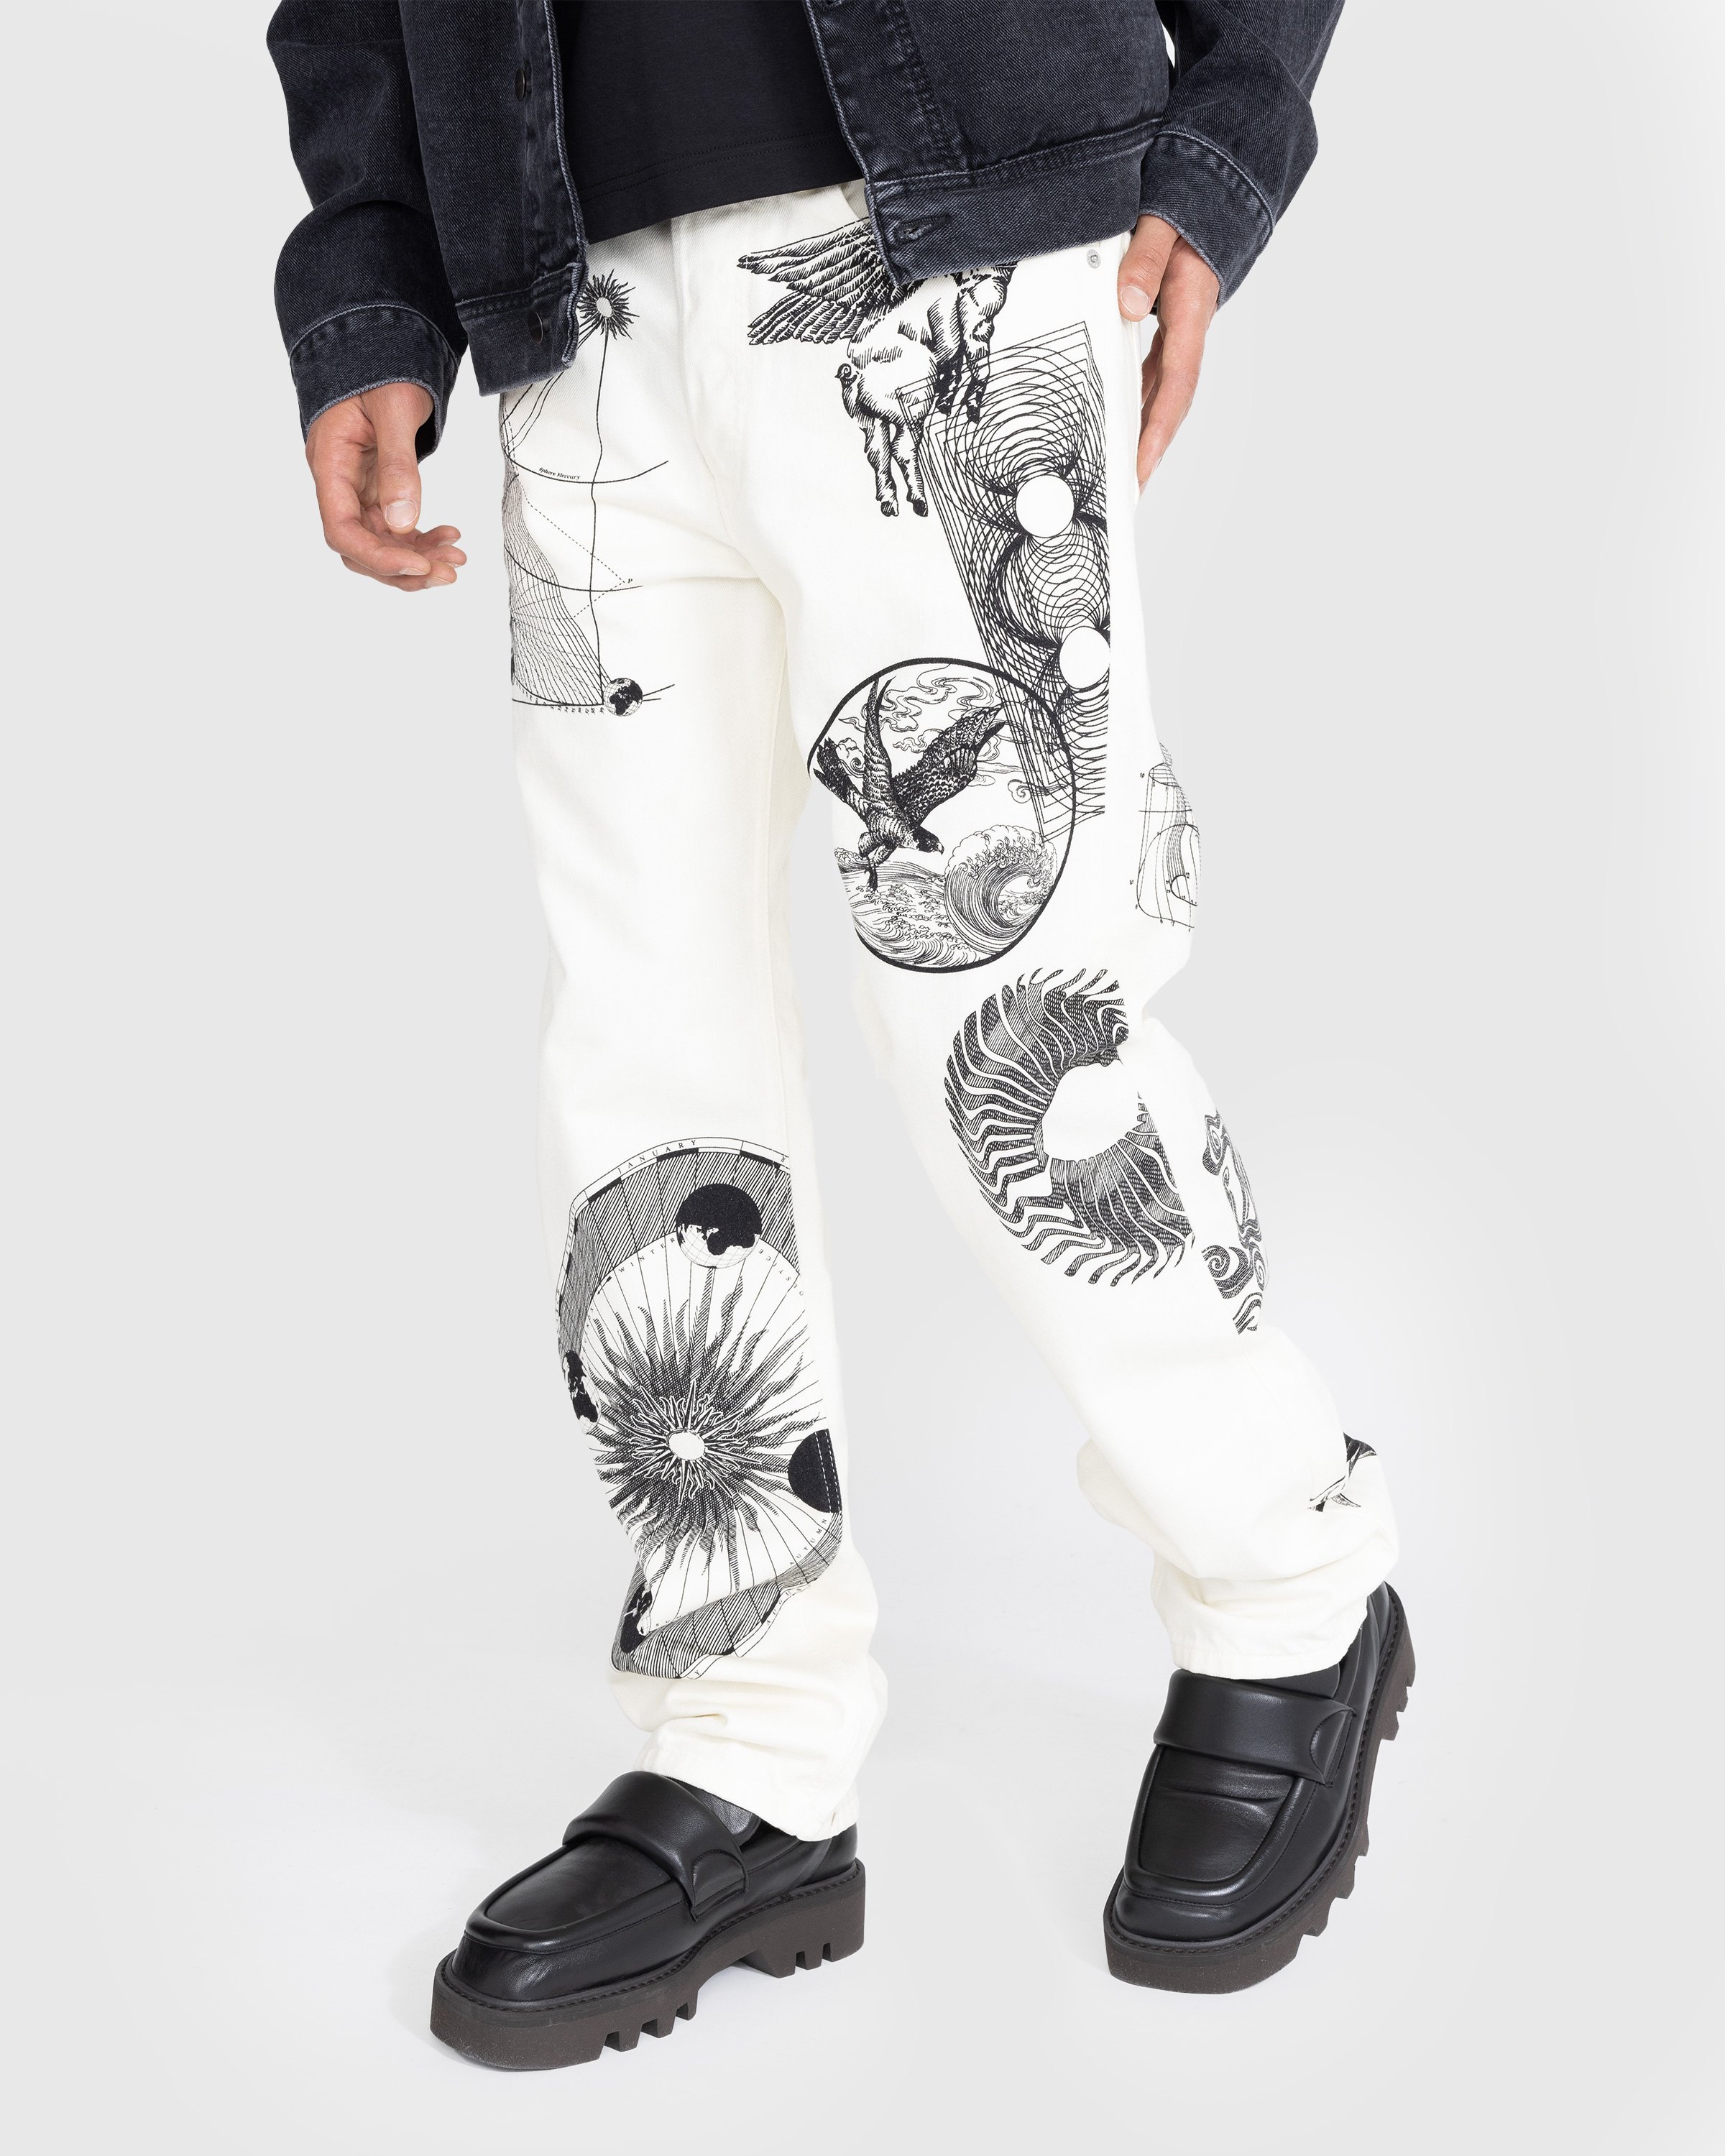 Dries van Noten – Panthero Pants White | Highsnobiety Shop